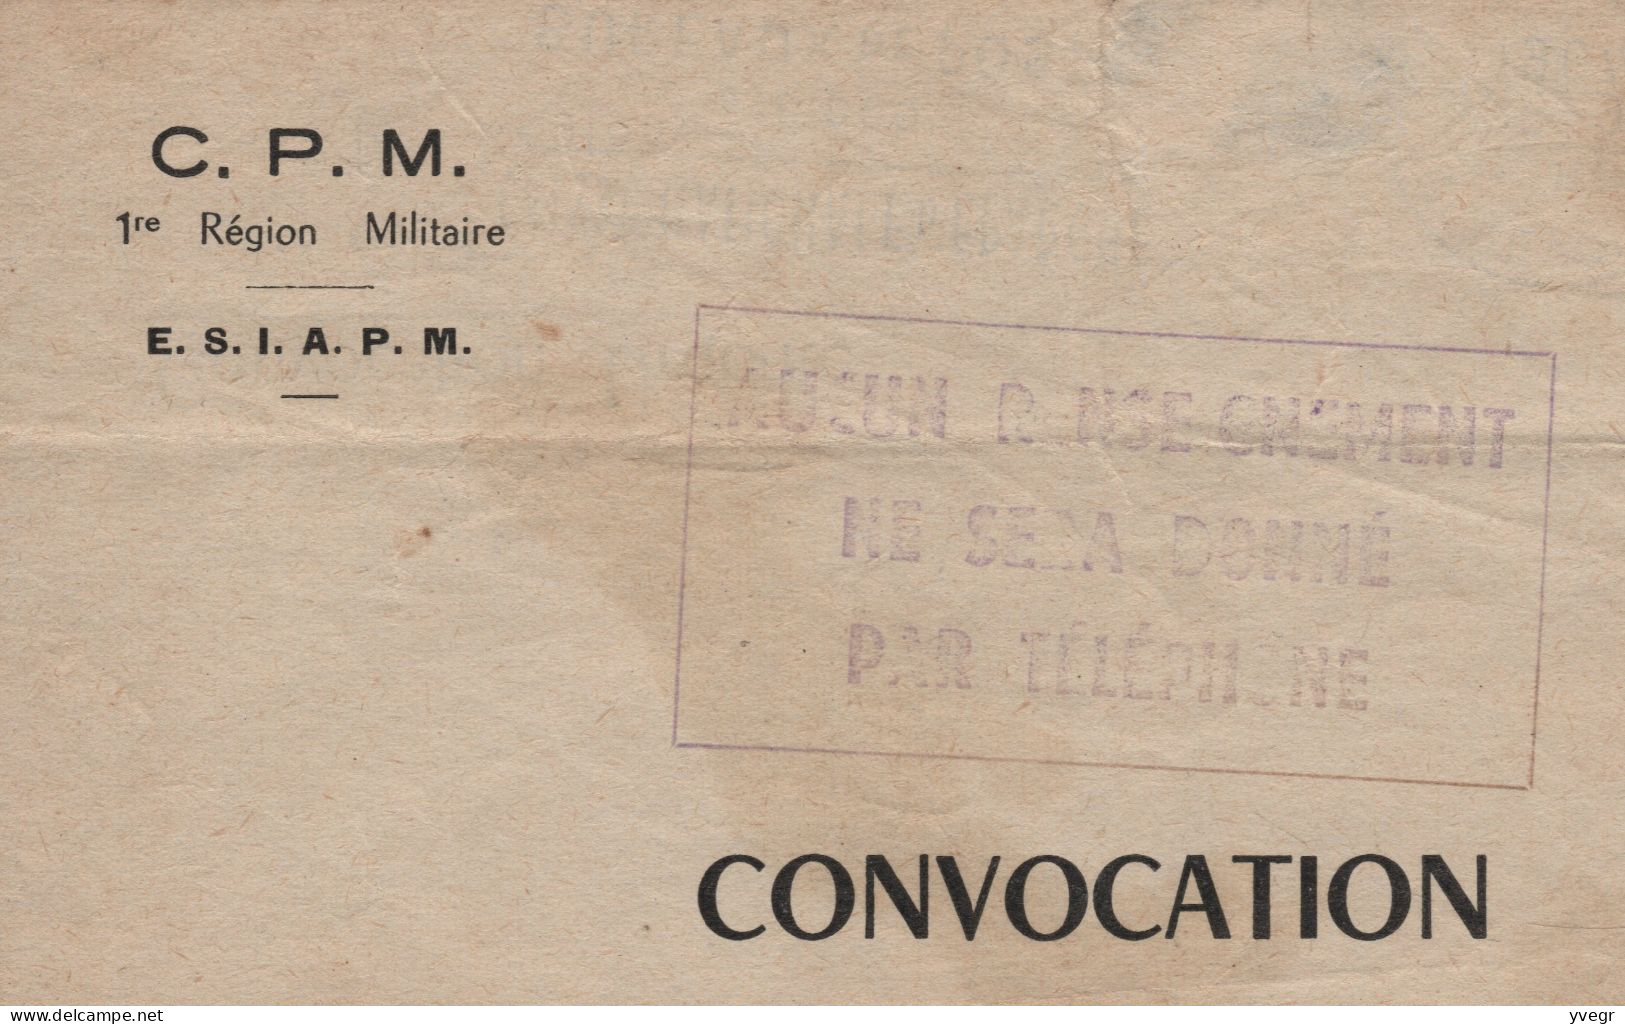 Militaria - Convocation URGENTE - C.P.M. 1re Région Militaire - E.S.I.A.P.M - à Puteaux Le 28 Septembre 1964 - Historical Documents